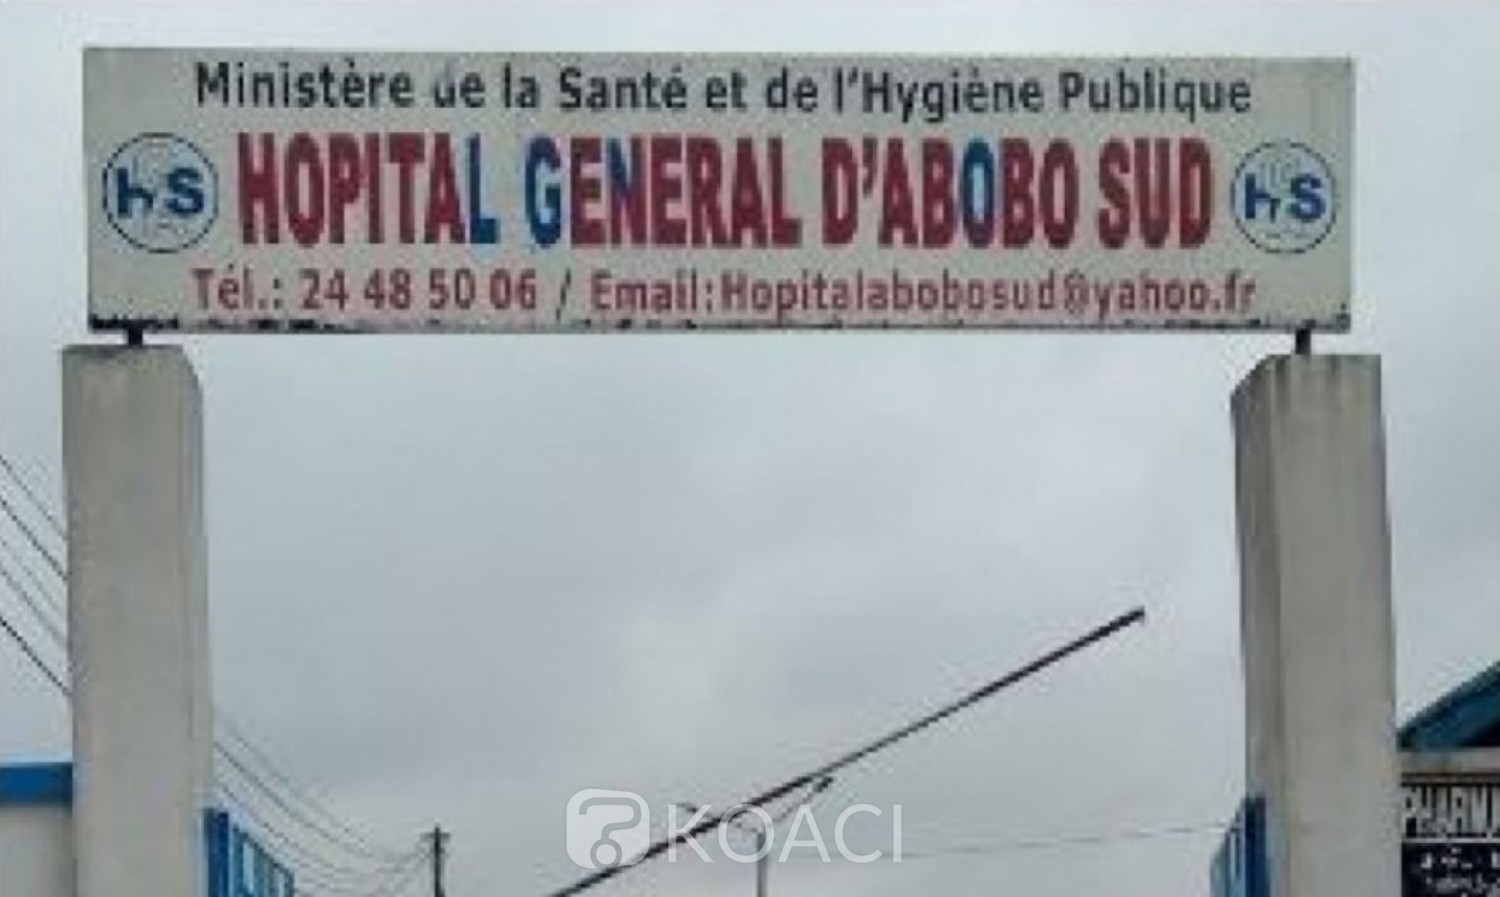 Côte d'Ivoire : Fermeture de l'Hôpital Général d'Abobo Sud à compter du 31 Août 2020, pour réhabilitation d'une durée de 12 mois